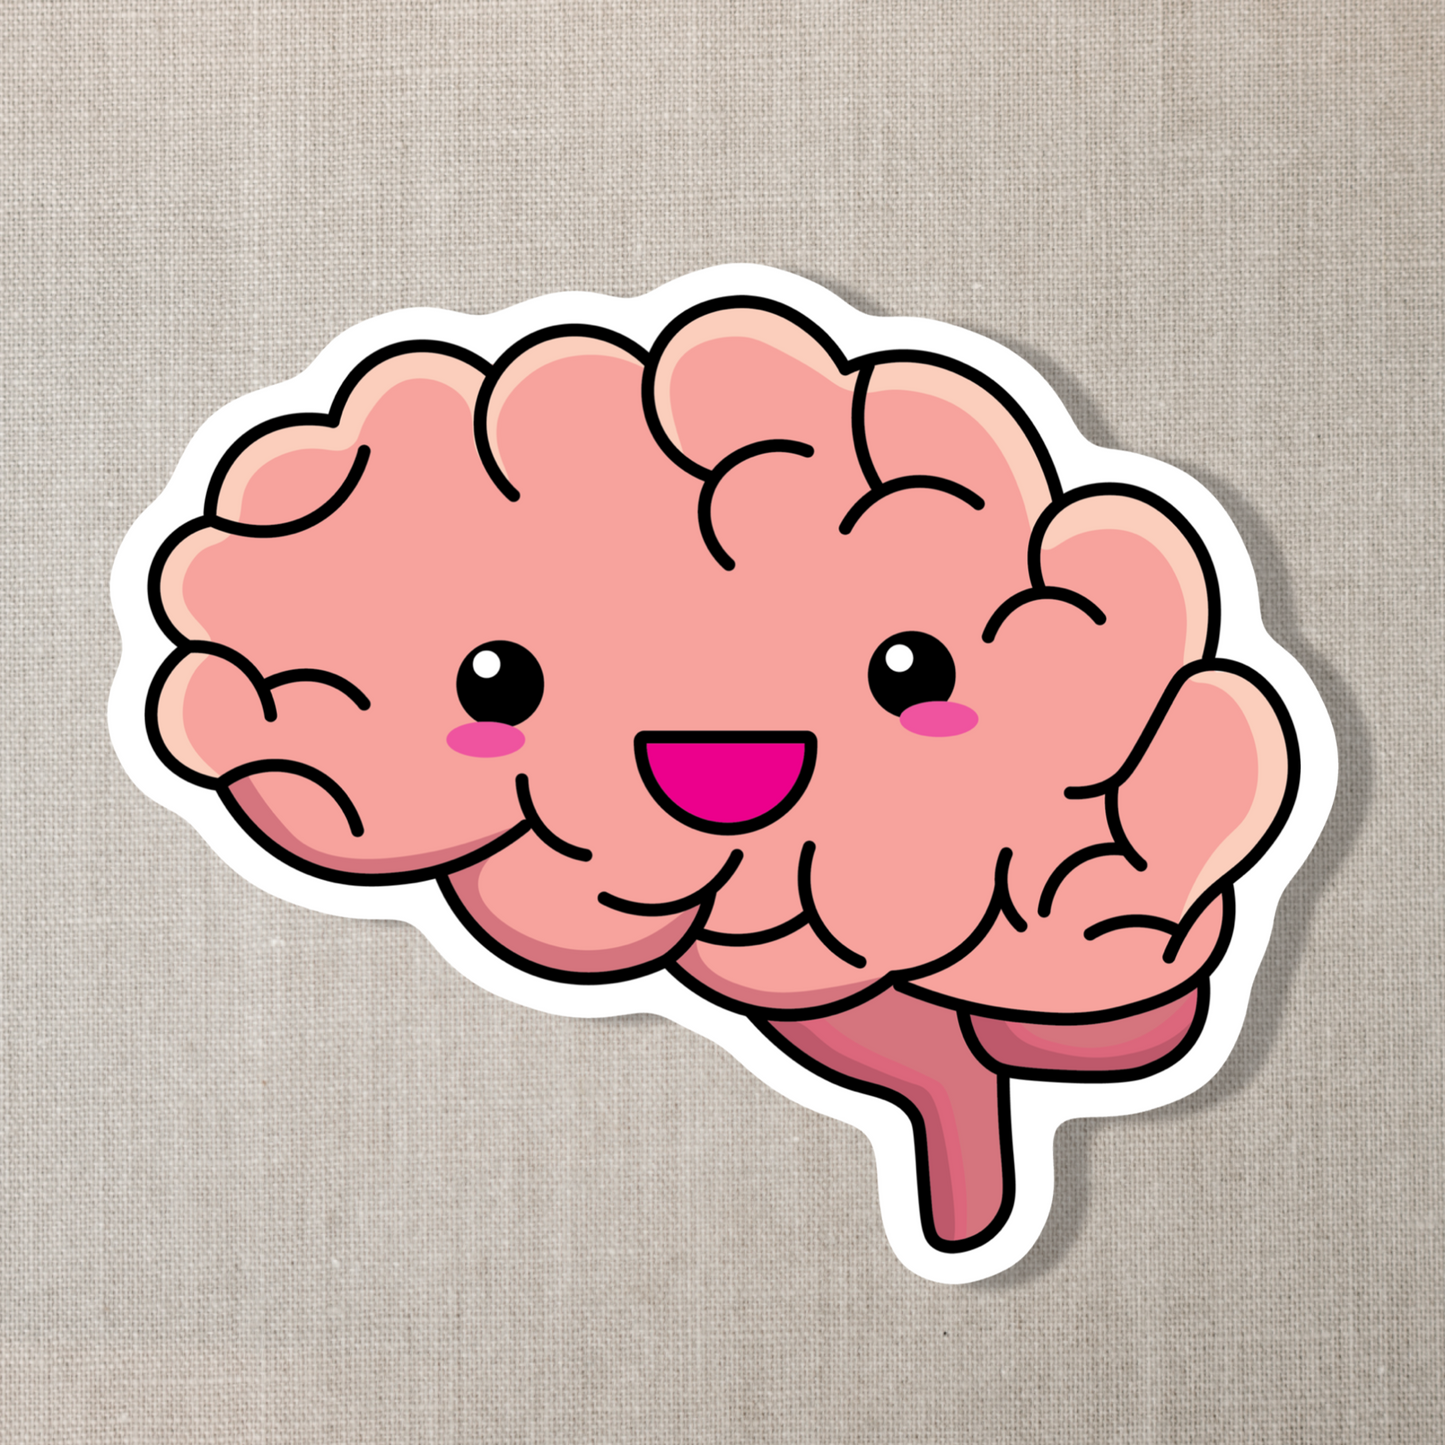 Brain Sticker